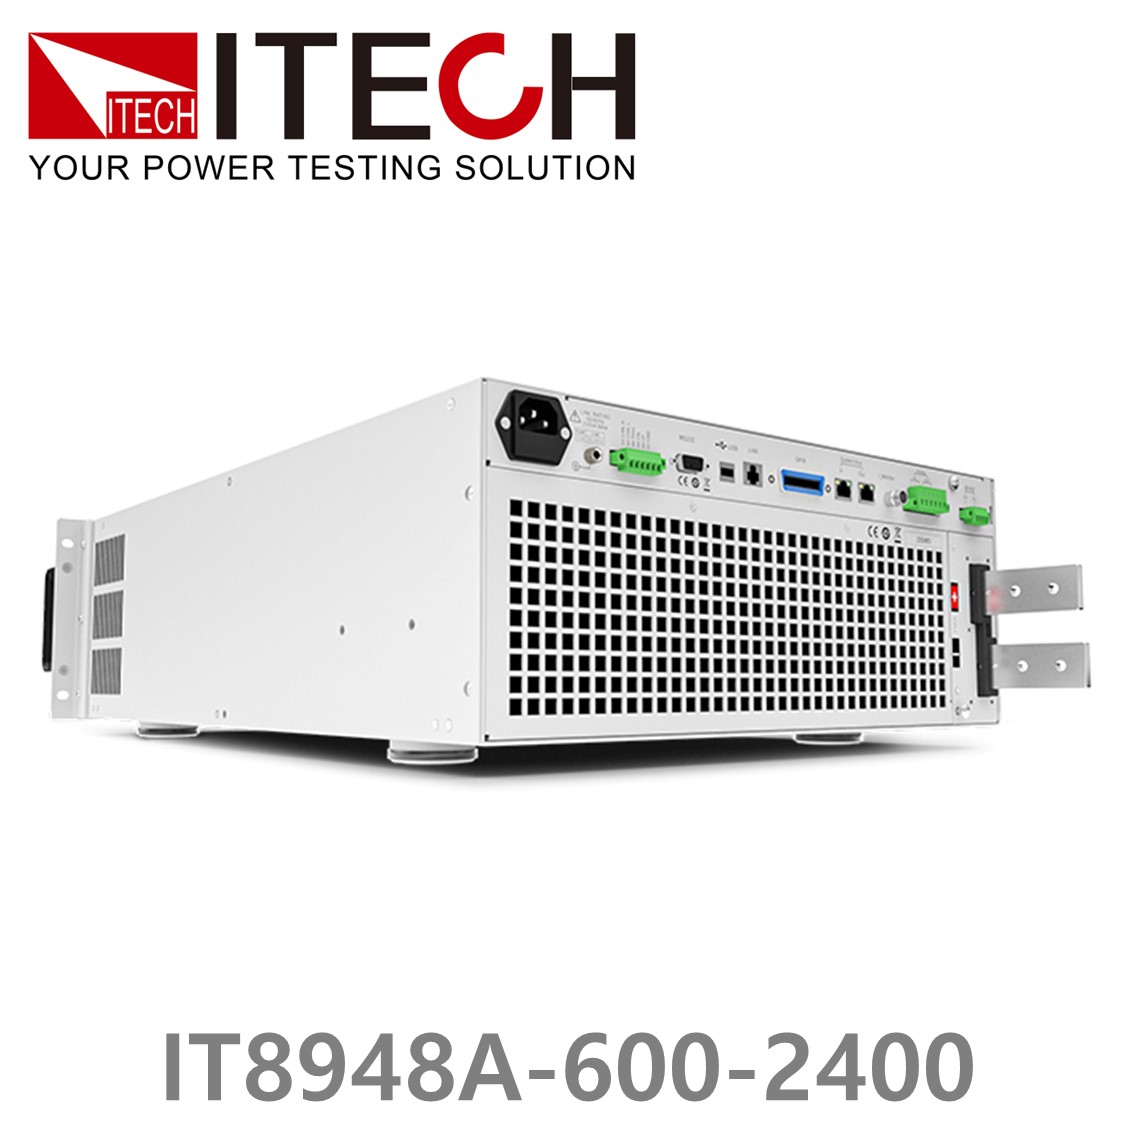 [ ITECH ] IT8948A-600-2400  고성능 고전력 DC 전자로드 600V/2400A/48kW (37U)